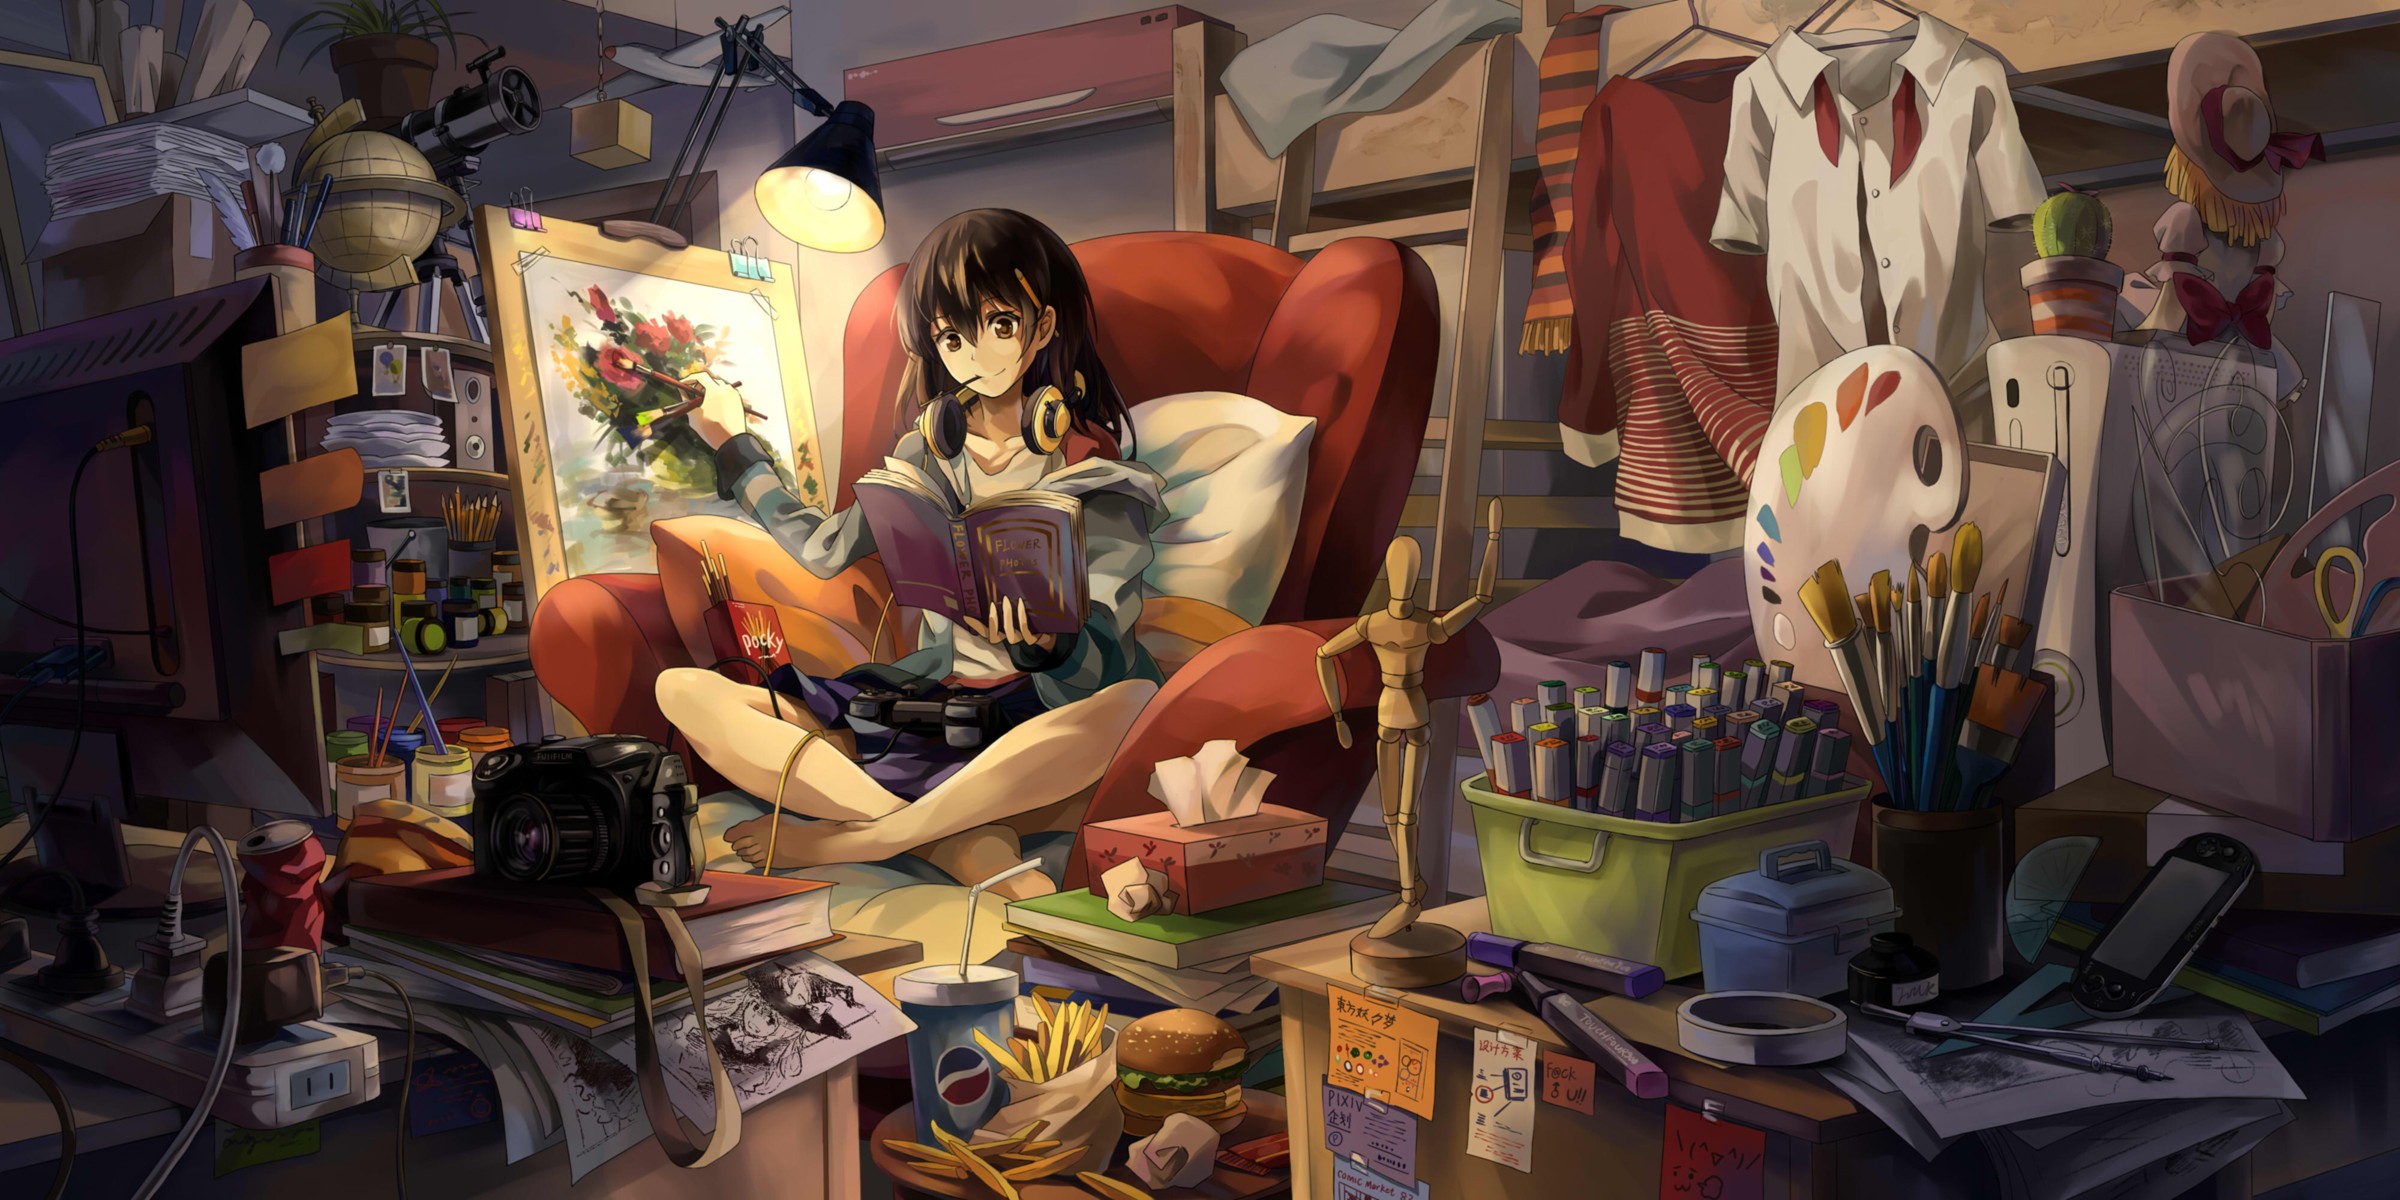 Anime Girl In Room - HD Wallpaper 